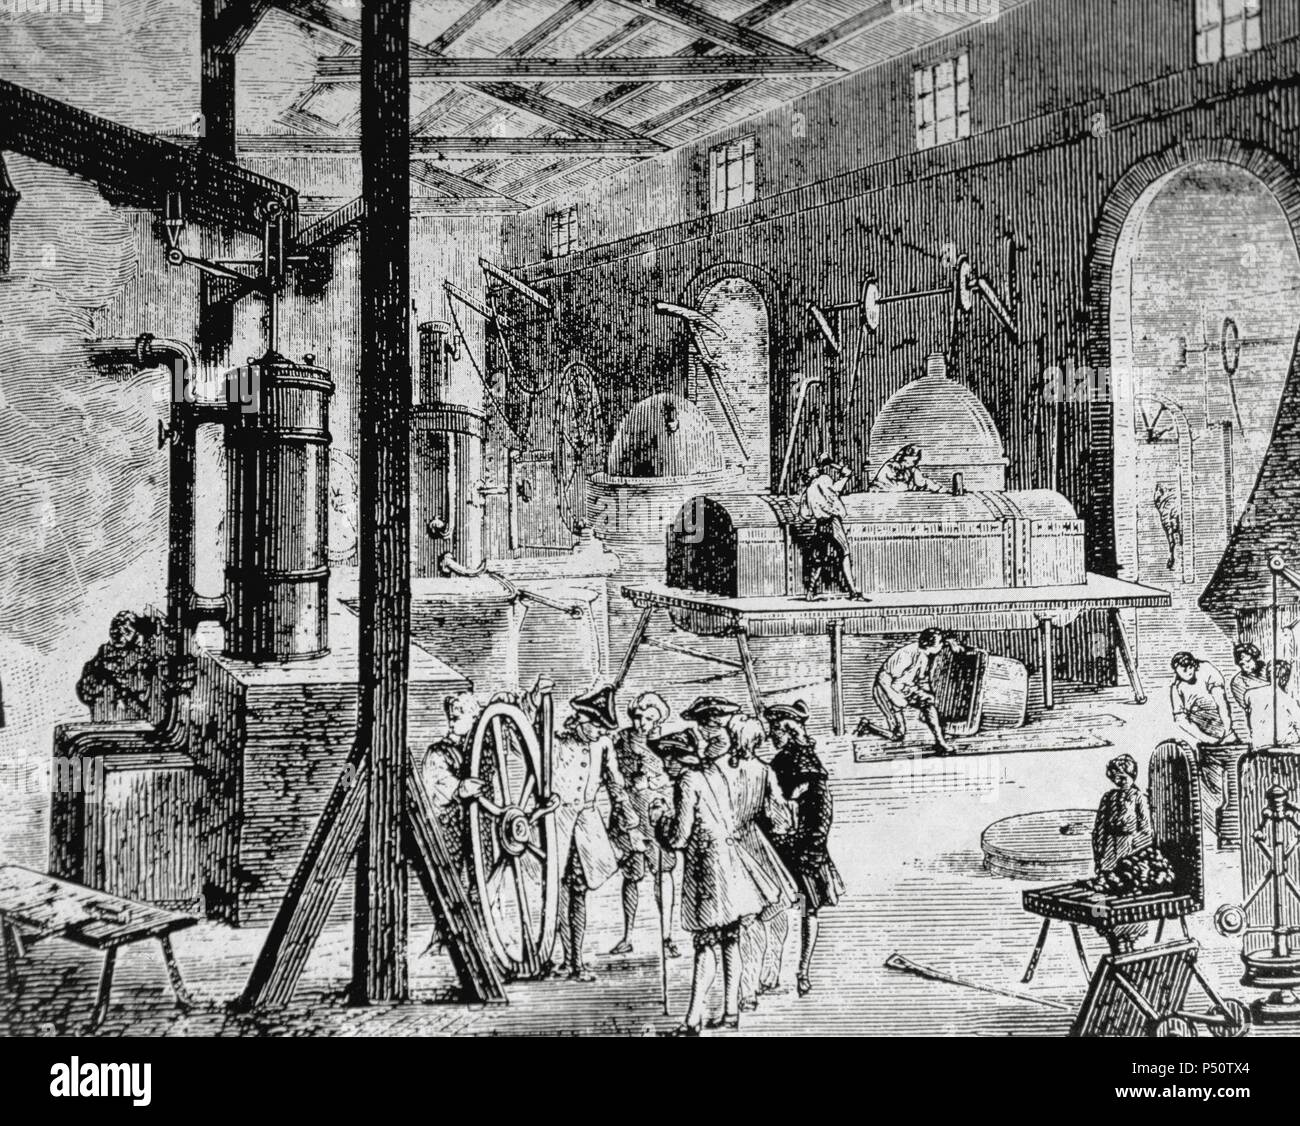 La rivoluzione industriale. Londra. Interno di una fabbrica inglese. Fine del XVIII secolo. Diciannovesimo secolo. Foto Stock